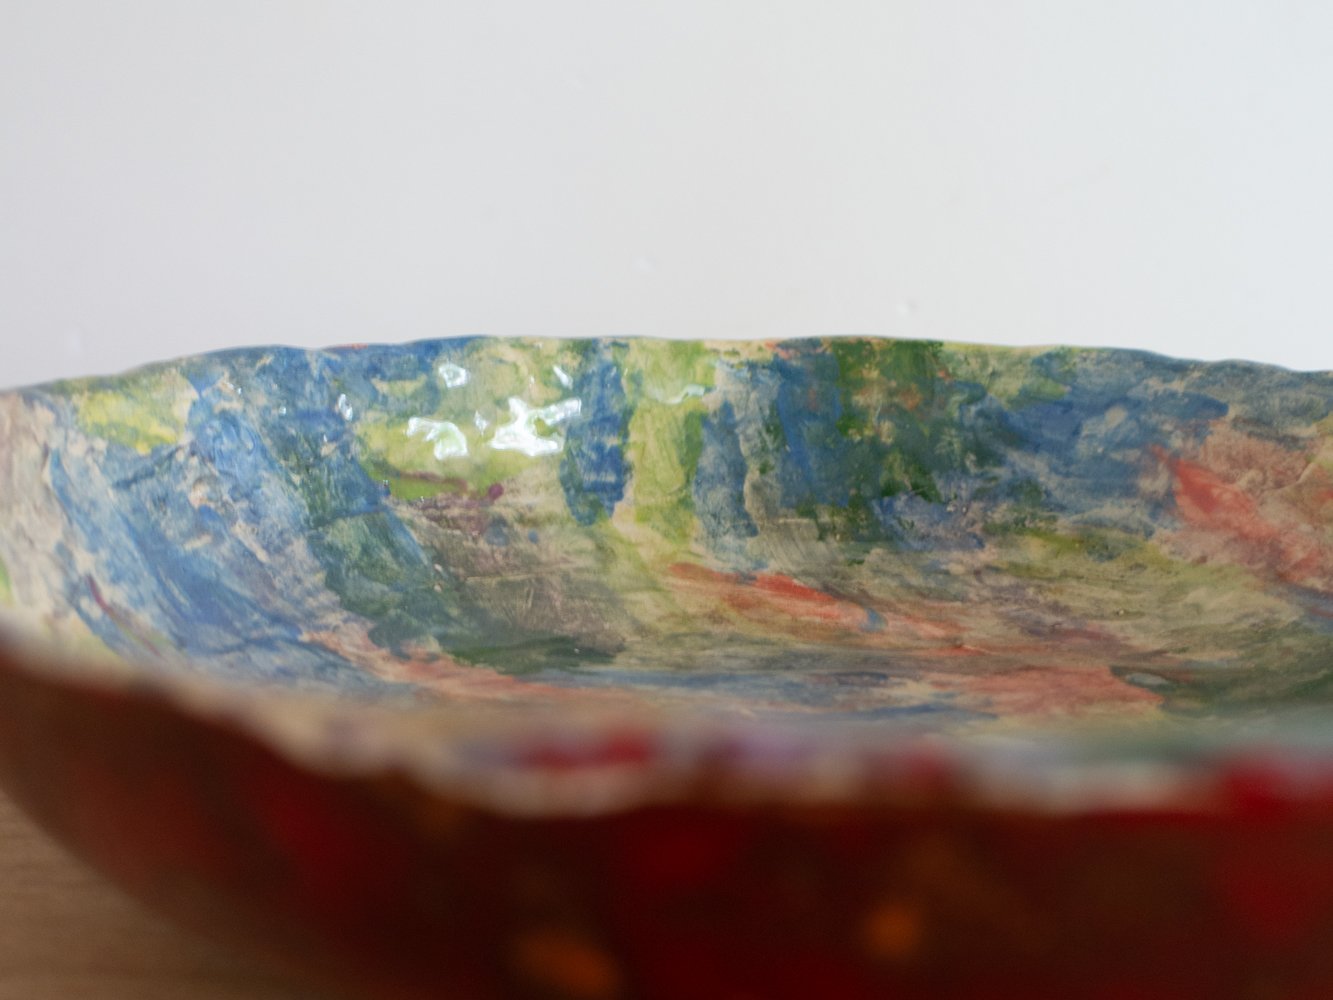 Image of papier-mache bowl